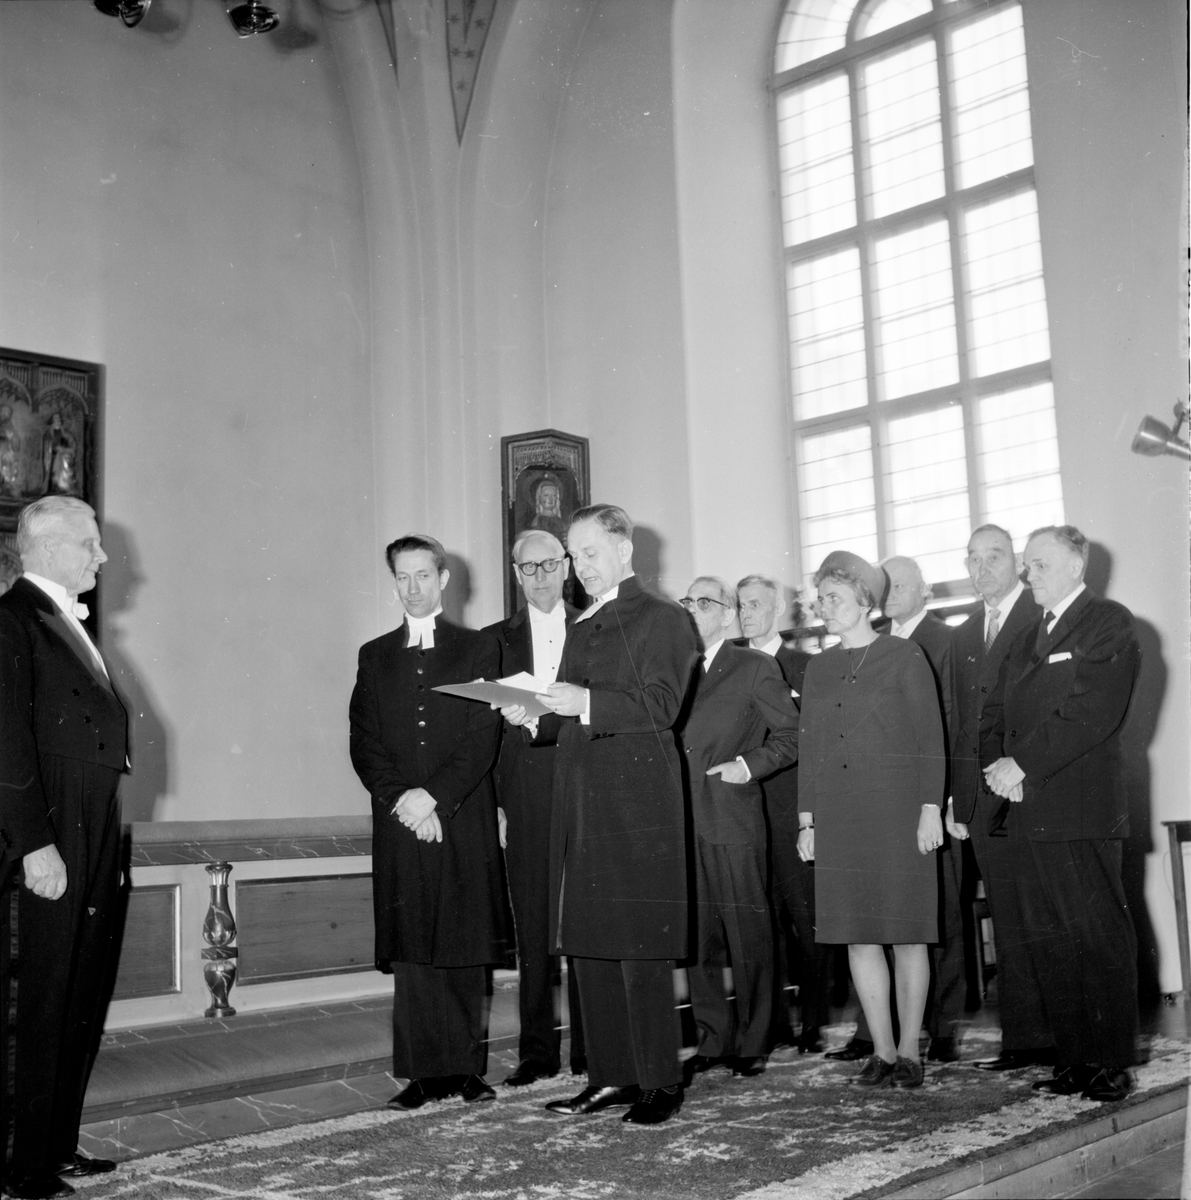 Bollnäs,
Carlsson Carl, Kyrkvärd får medalj,
10 April 1966